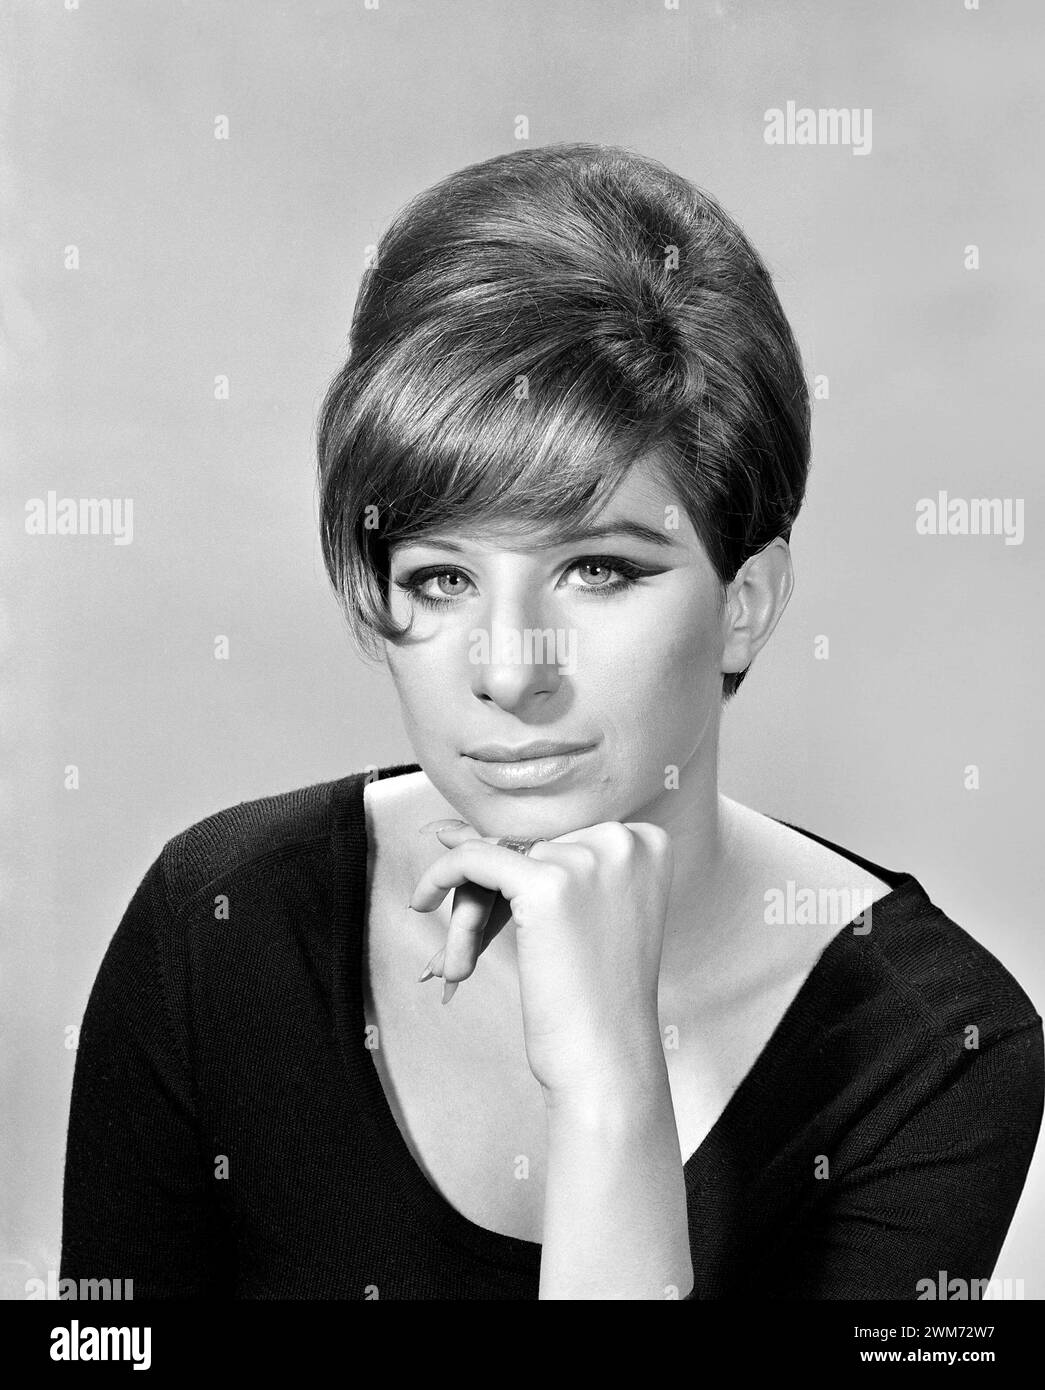 Barbra Streisand. Porträt der amerikanischen Sängerin und Schauspielerin Barbara Joan 'Barbra' Streisand (* 1942), Werbefoto, 1966 Stockfoto